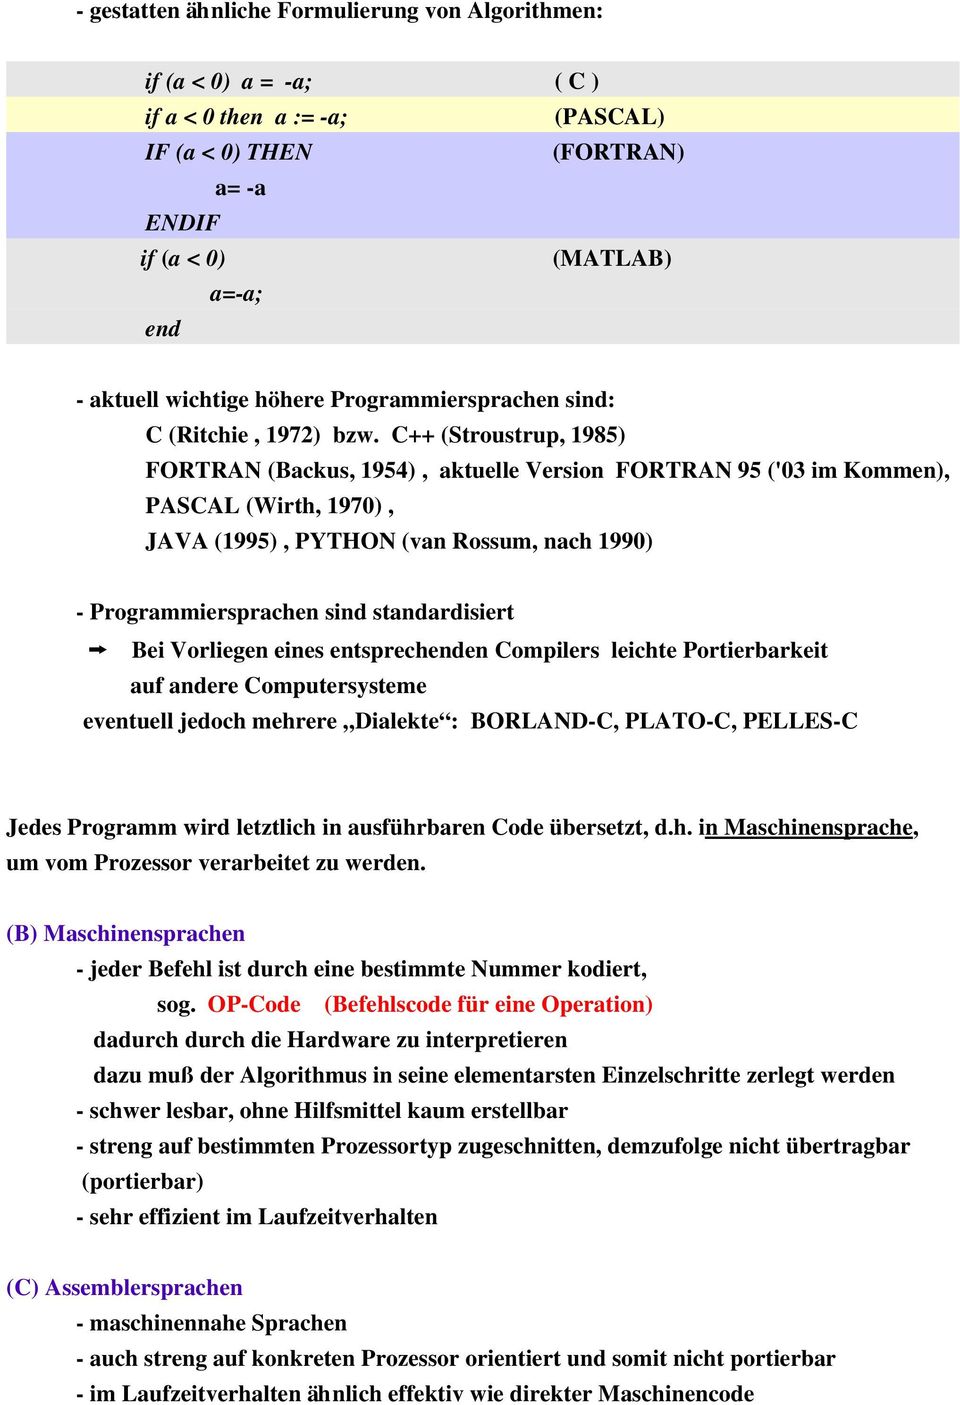 C++ (Stroustrup, 1985) FORTRAN (Backus, 1954), aktuelle Version FORTRAN 95 ('03 im Kommen), PASCAL (Wirth, 1970), JAVA (1995), PYTHON (van Rossum, nach 1990) Programmiersprachen sind standardisiert